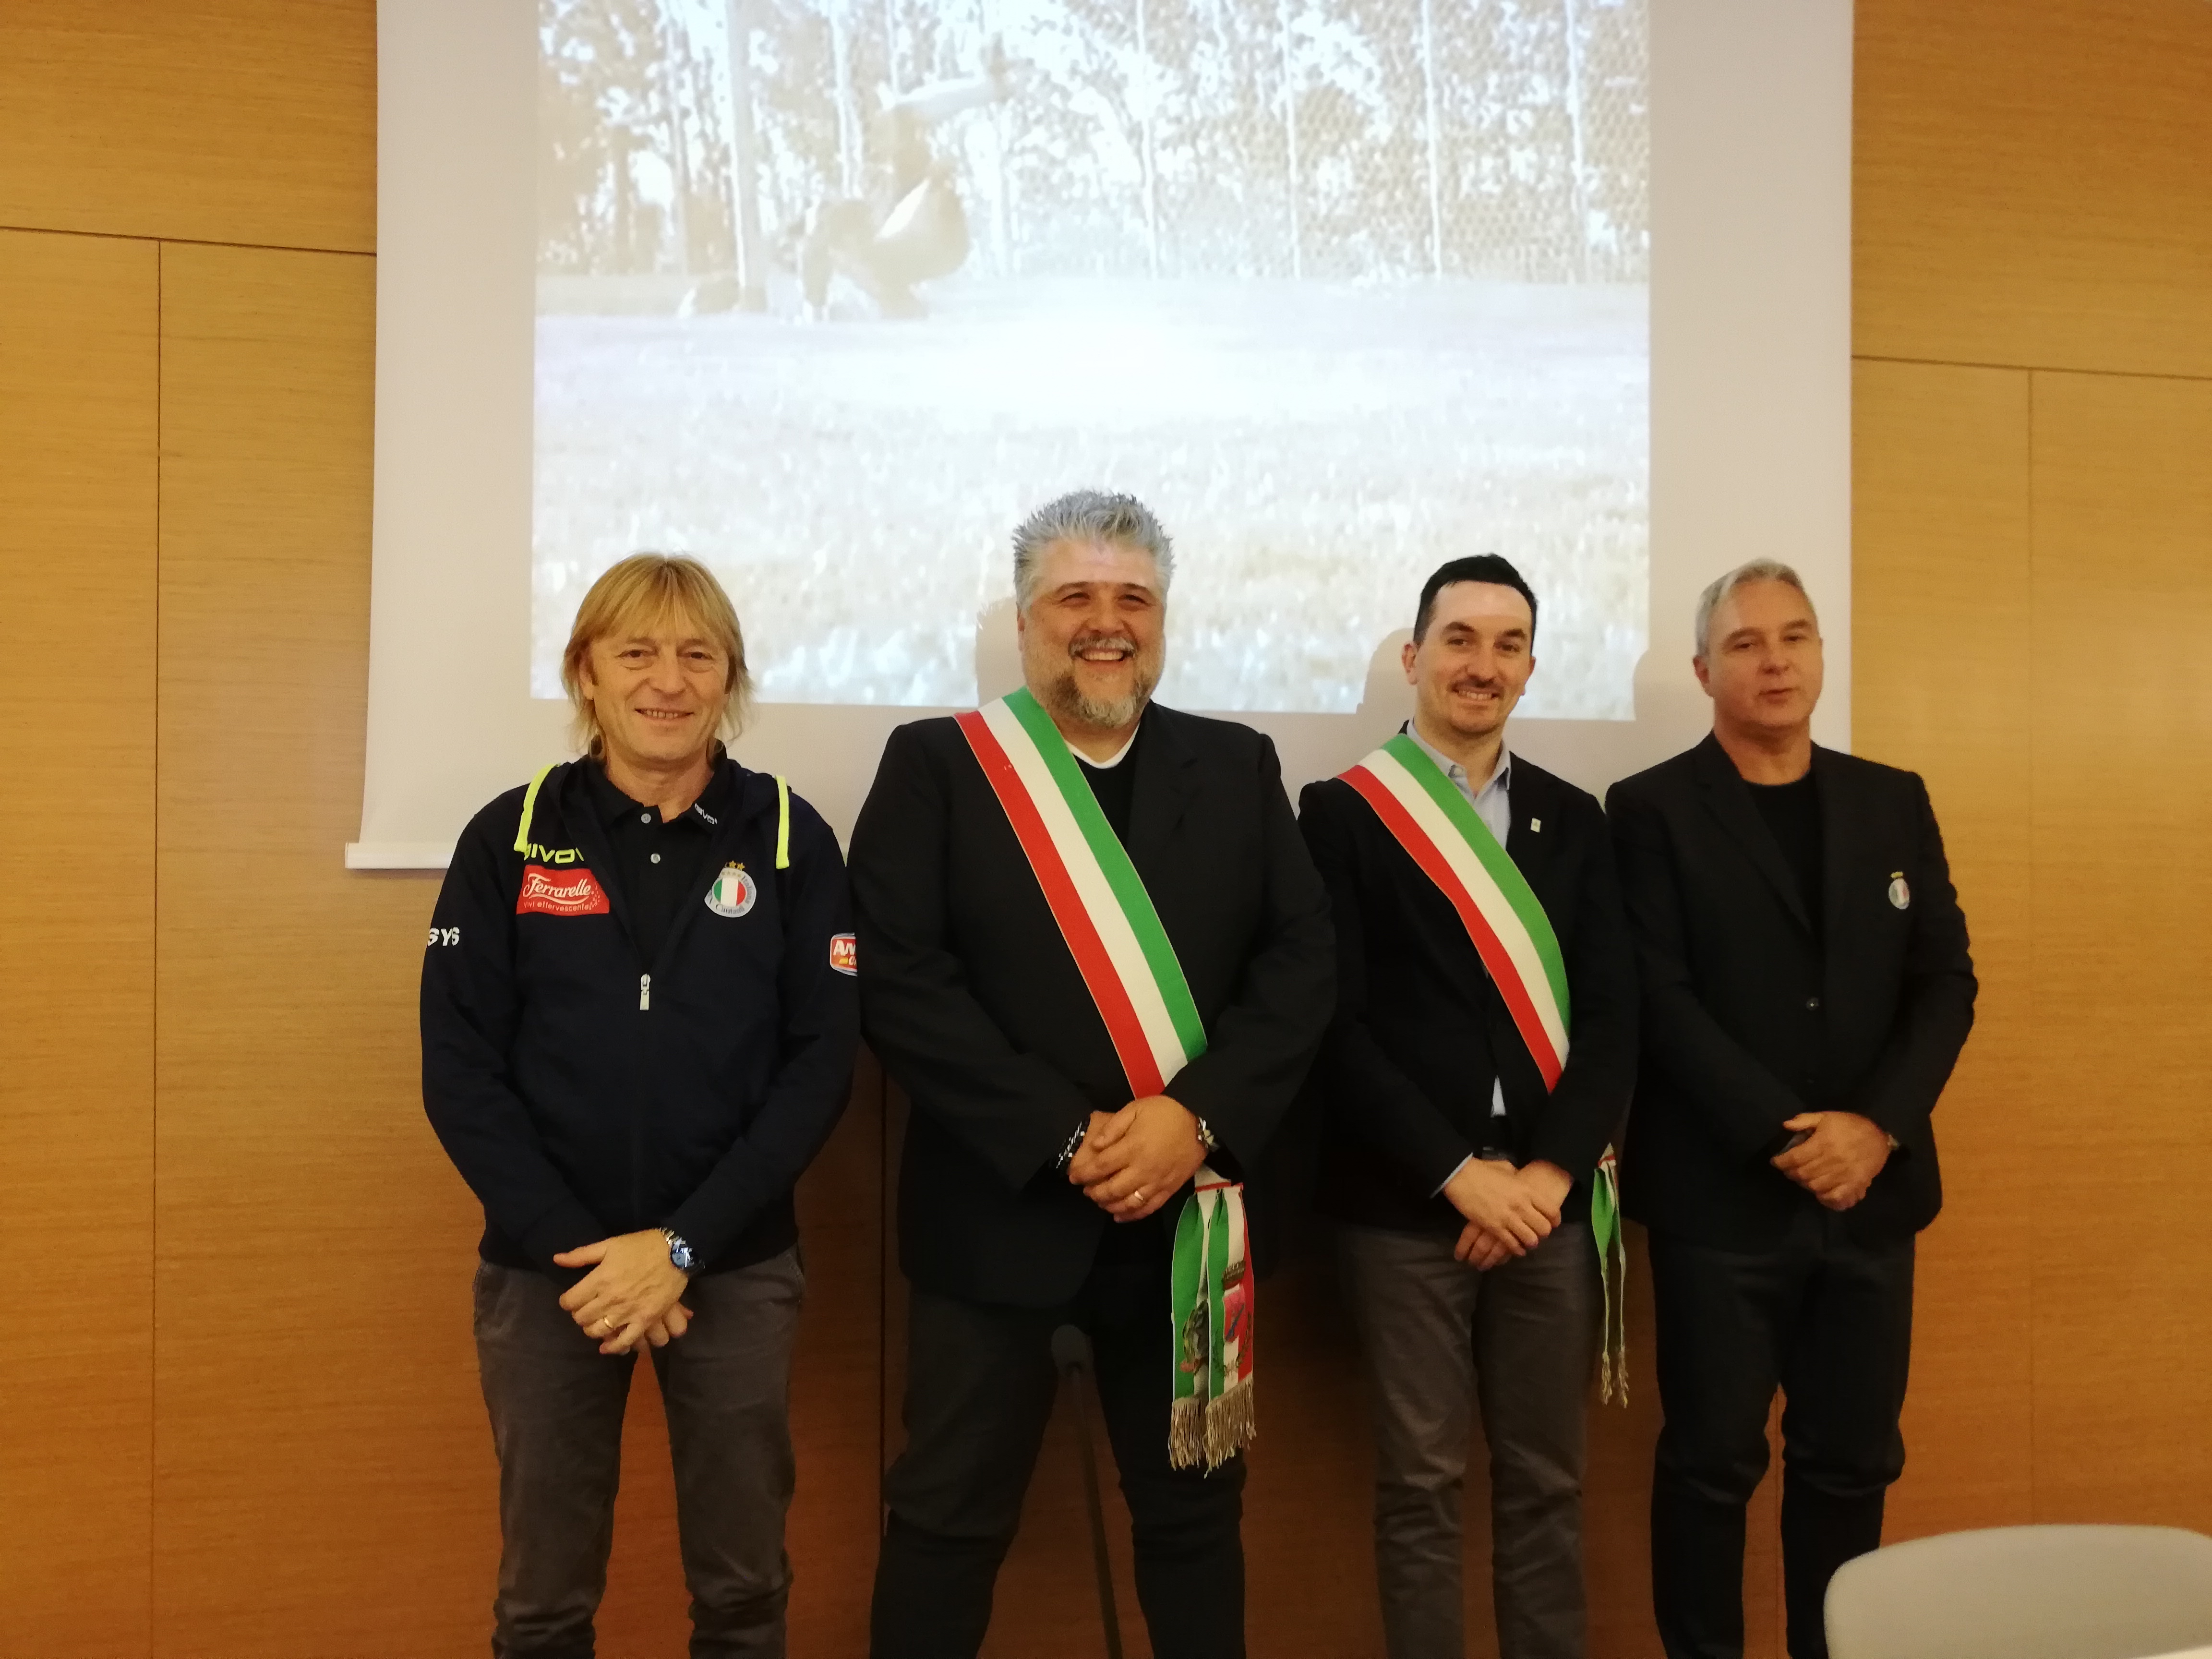 La Nazionale cantanti torna in Romagna